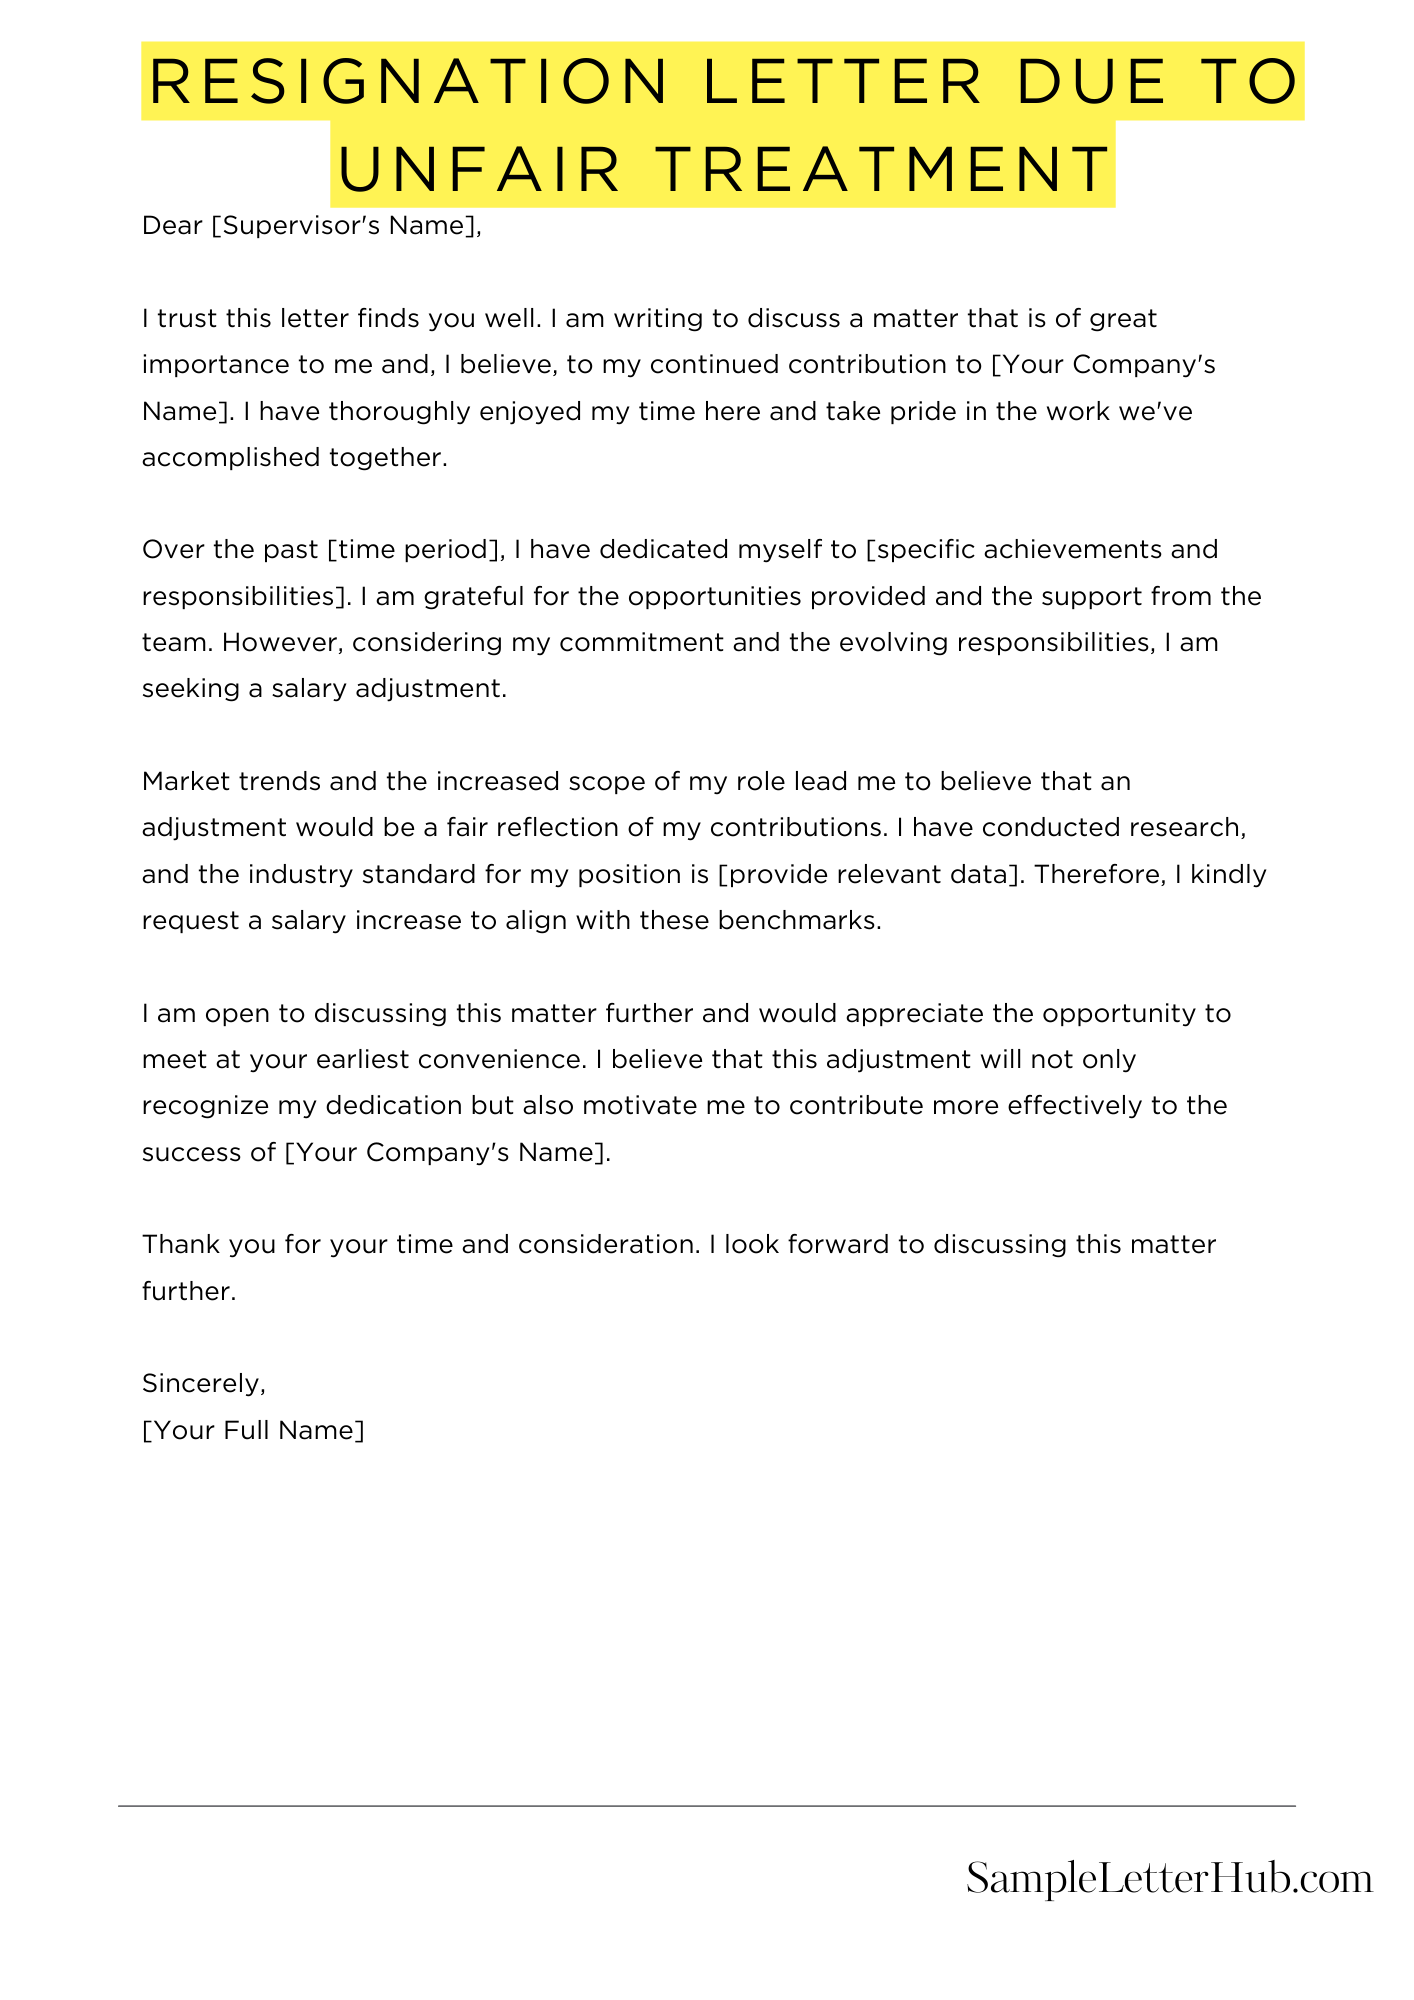 Resignation Letter Due To Unfair Treatment